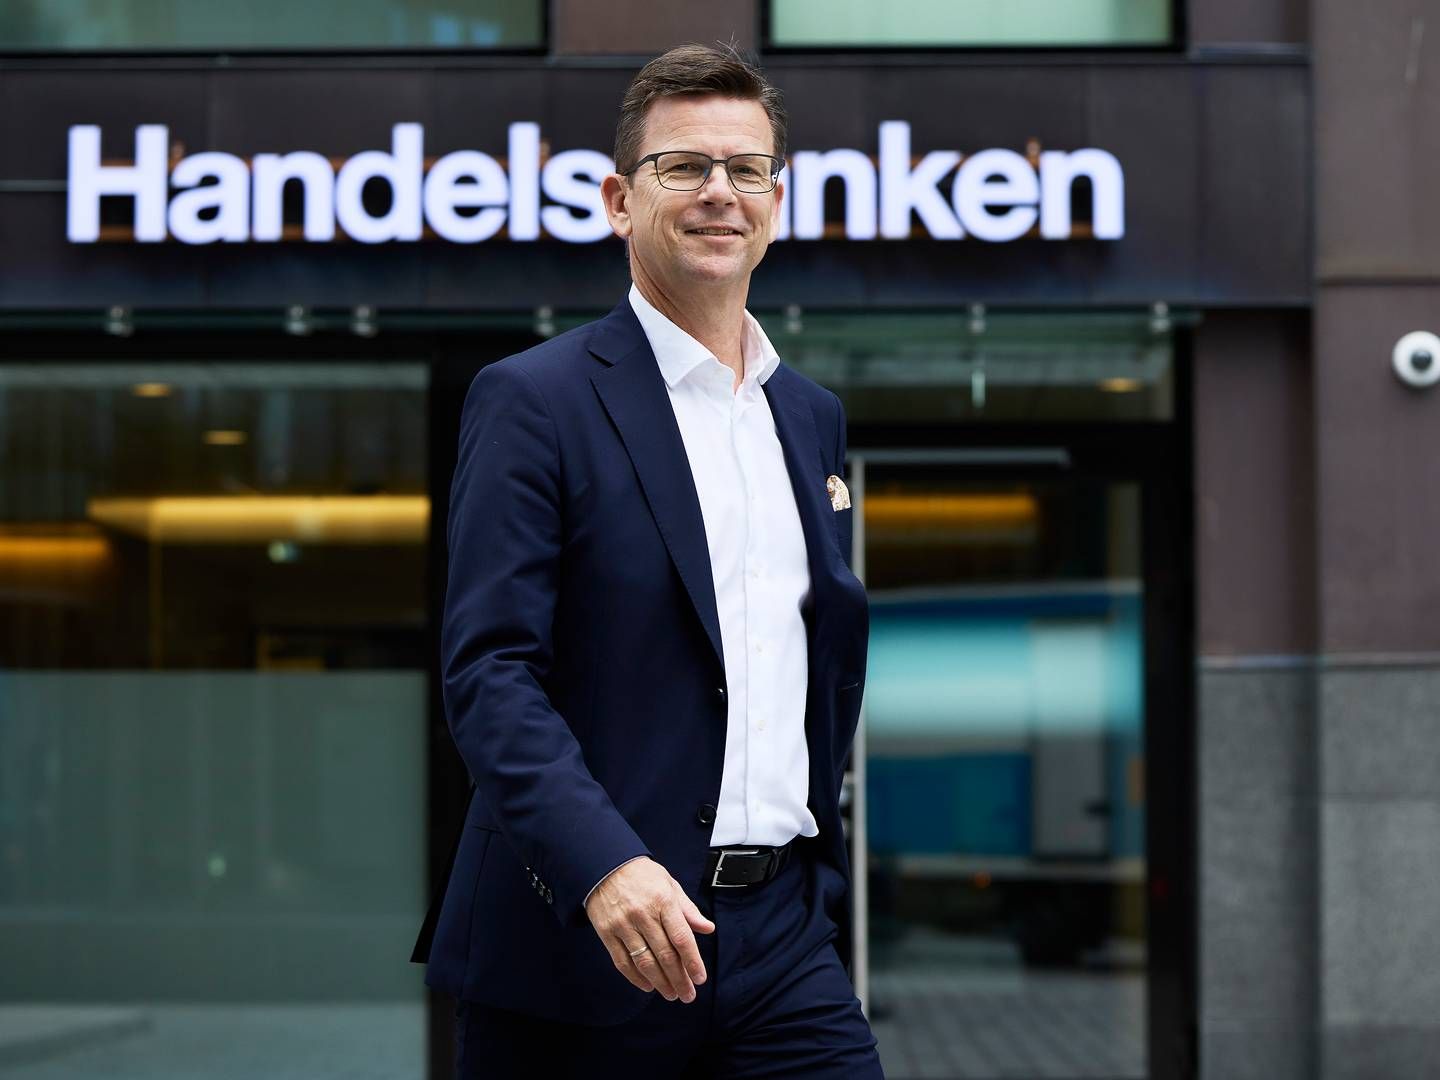 RÅD TIL Å GI RÅD: Landsjef Arild Andersen leder nå en bank med over 1000 ansatte i Norge.. Halvparten av de ansatte er kunderådgivere. | Foto: Bård Gudim / Handelsbanken